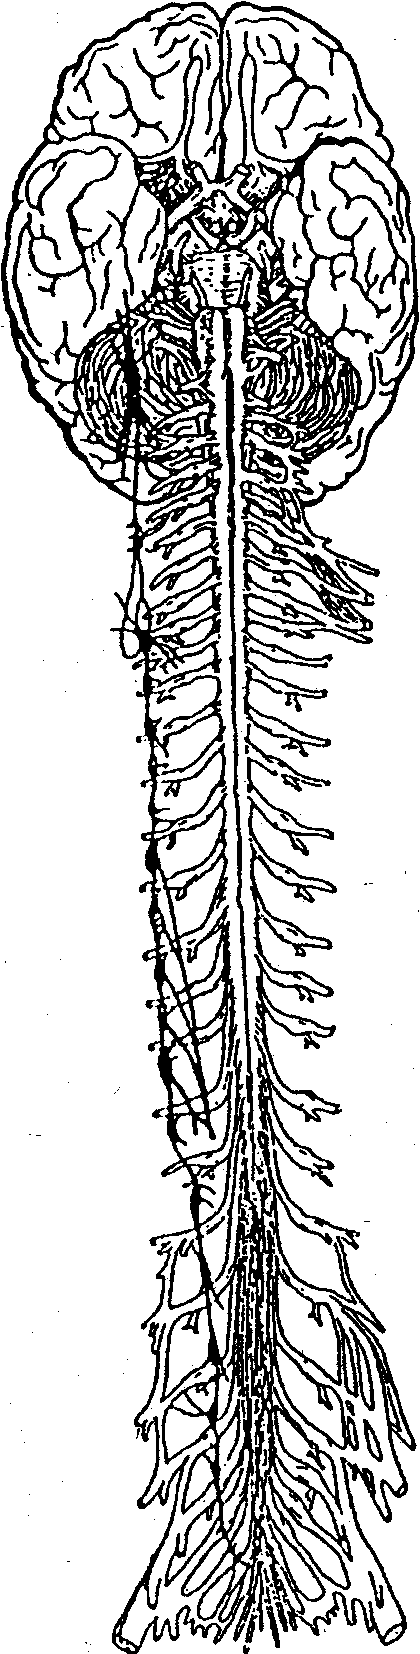 Передний столб спинного мозга. Нервная система человека спинной мозг. Позвоночный столб и спинной мозг. Головные и спинные нервы. Головной и спинной мозг рисунок.